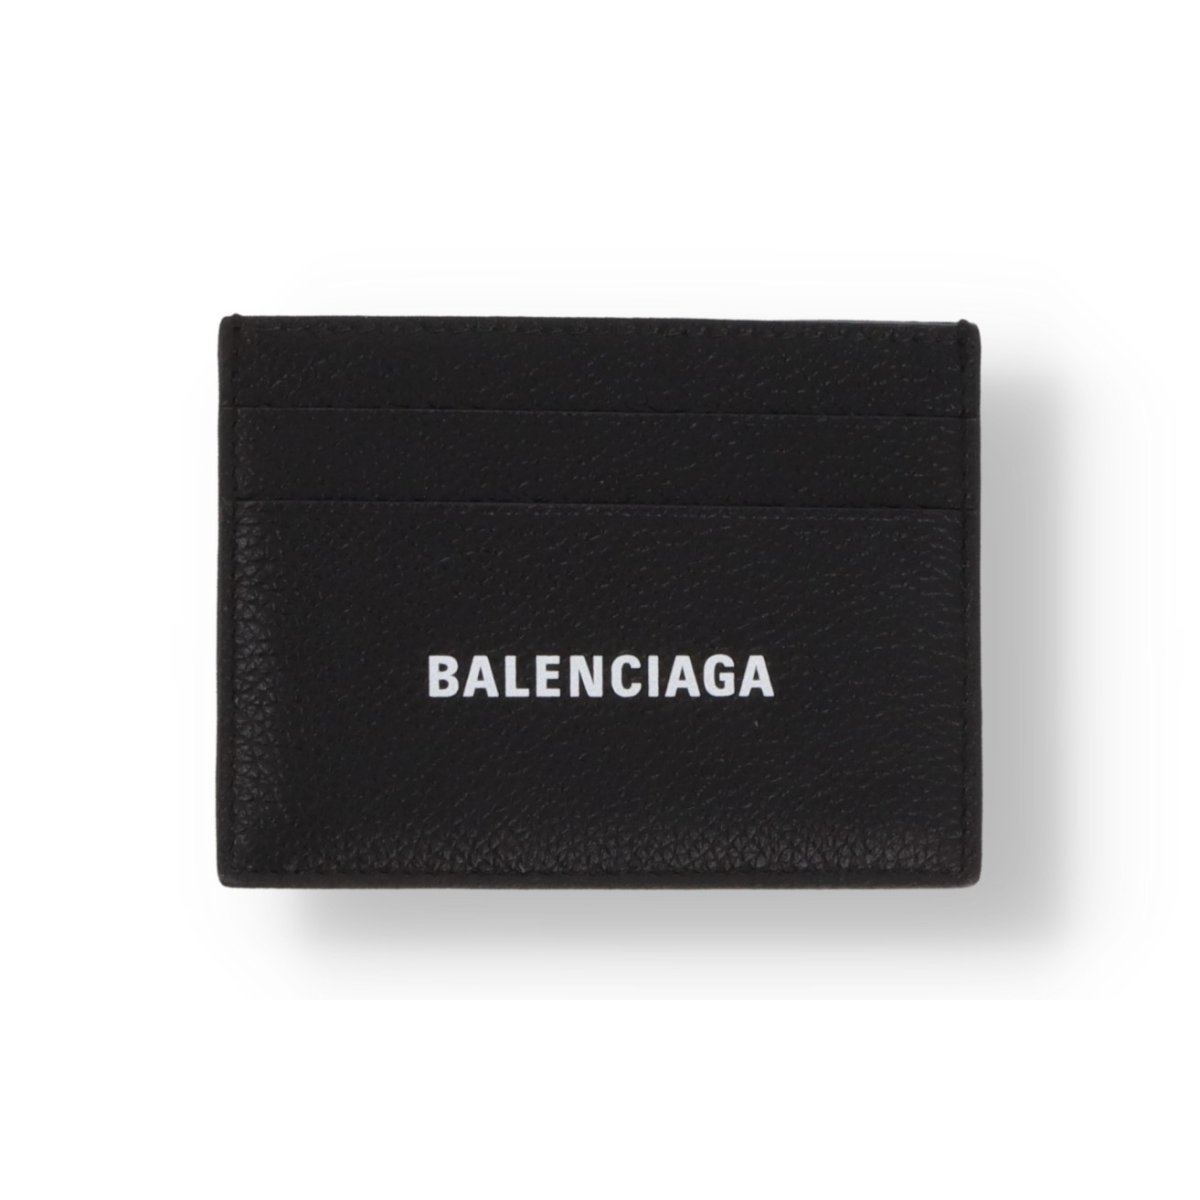 Kartenhalter Balenciaga Cash